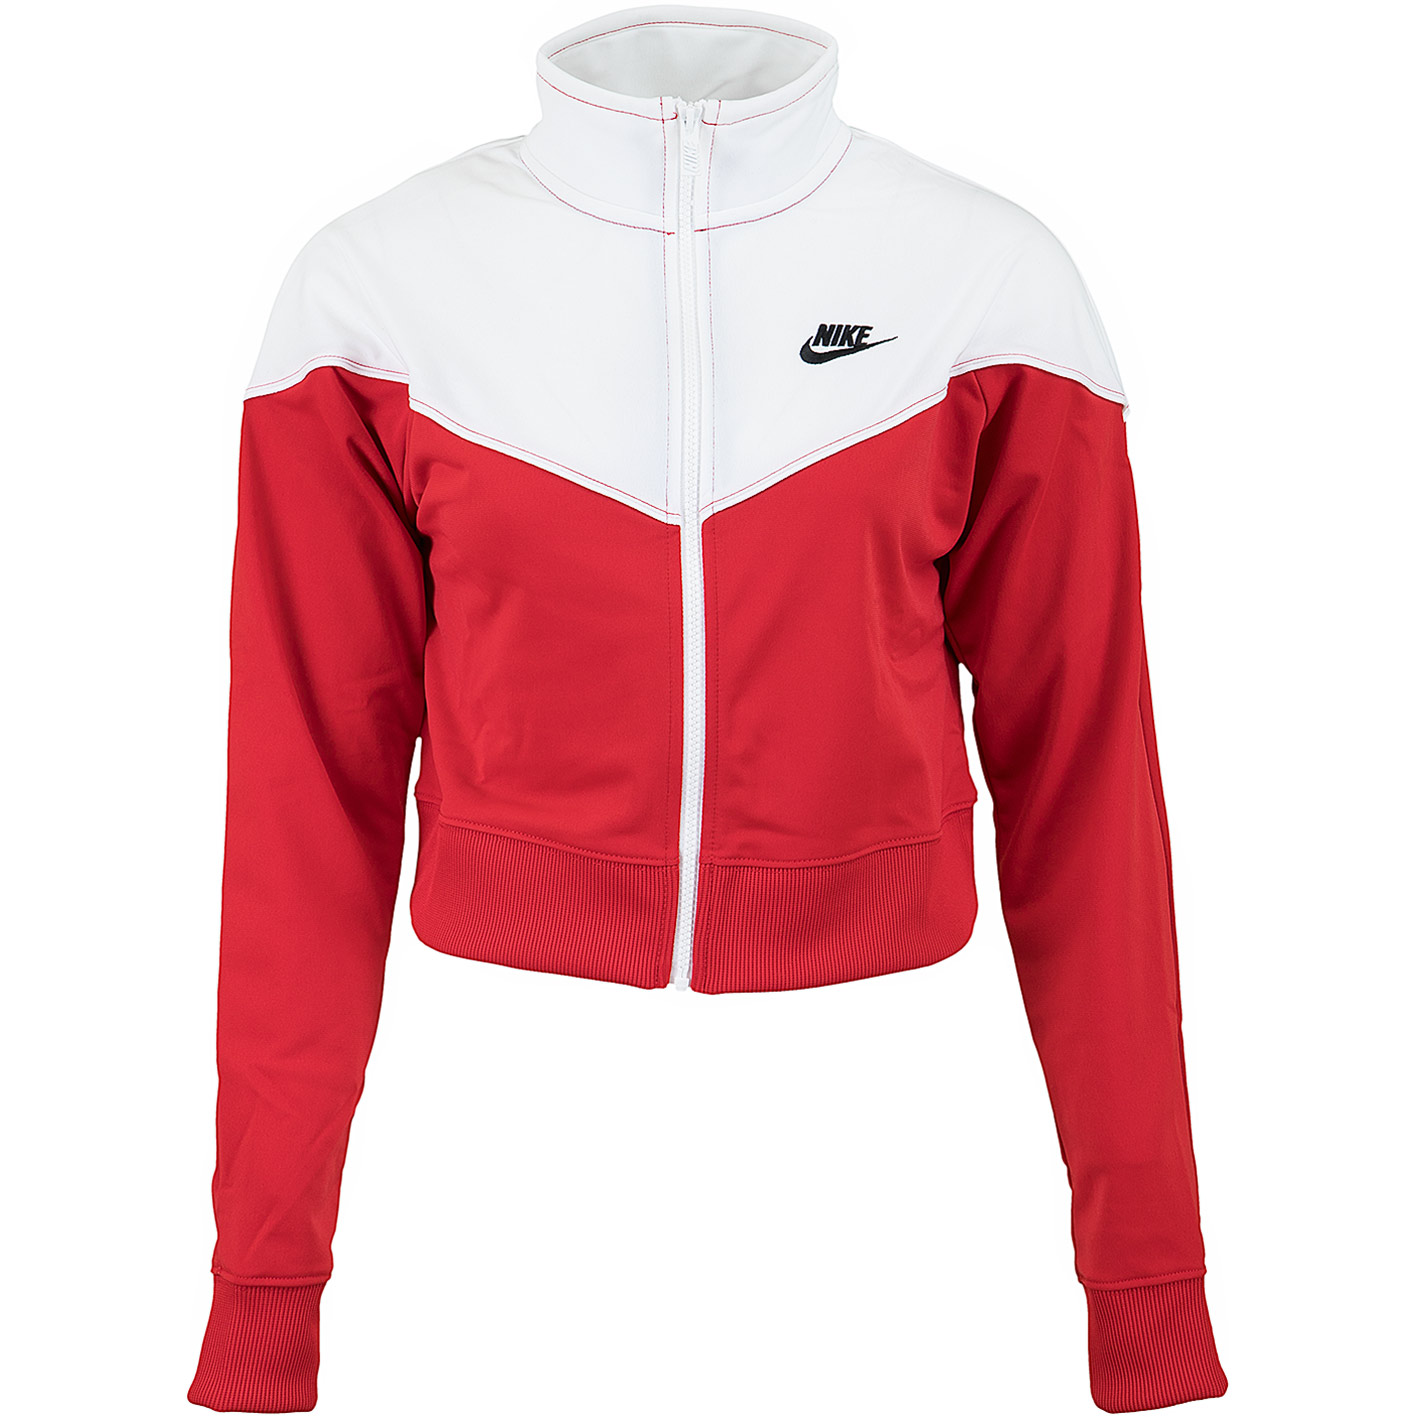 ☆ Nike Damen Trainingsjacke Heritage rot/weiß - hier bestellen!